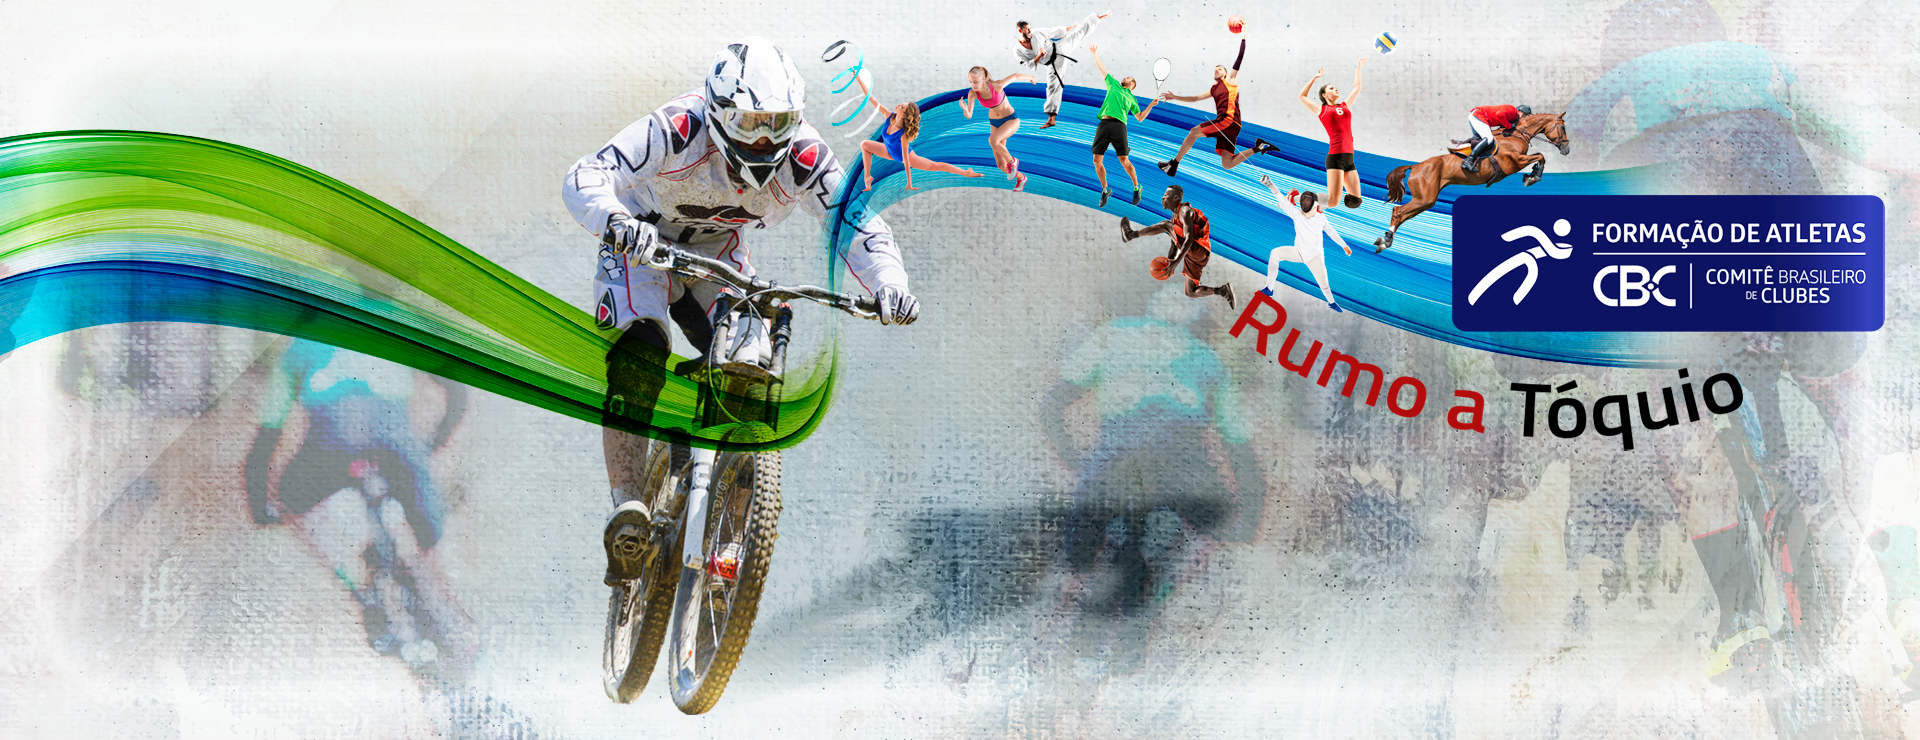 Ciclismo brasileiro terá 5 atletas nos Jogos Olímpicos de Tóquio, 3 no Mountain Bike e 2 no BMX